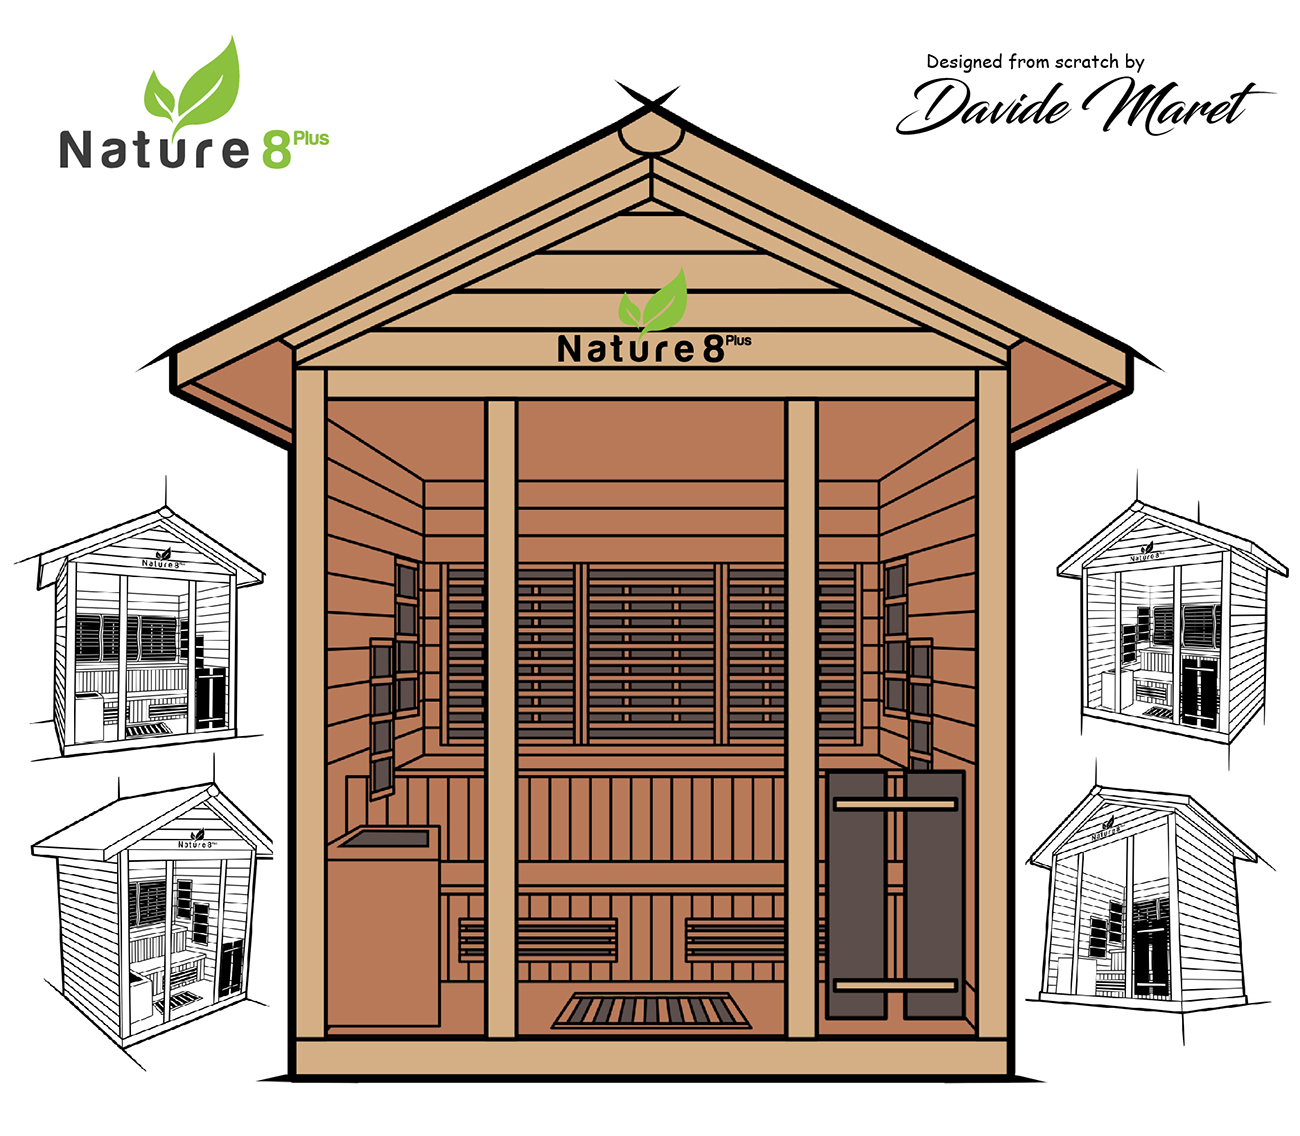 medical sauna nature8 design sketch from david maret